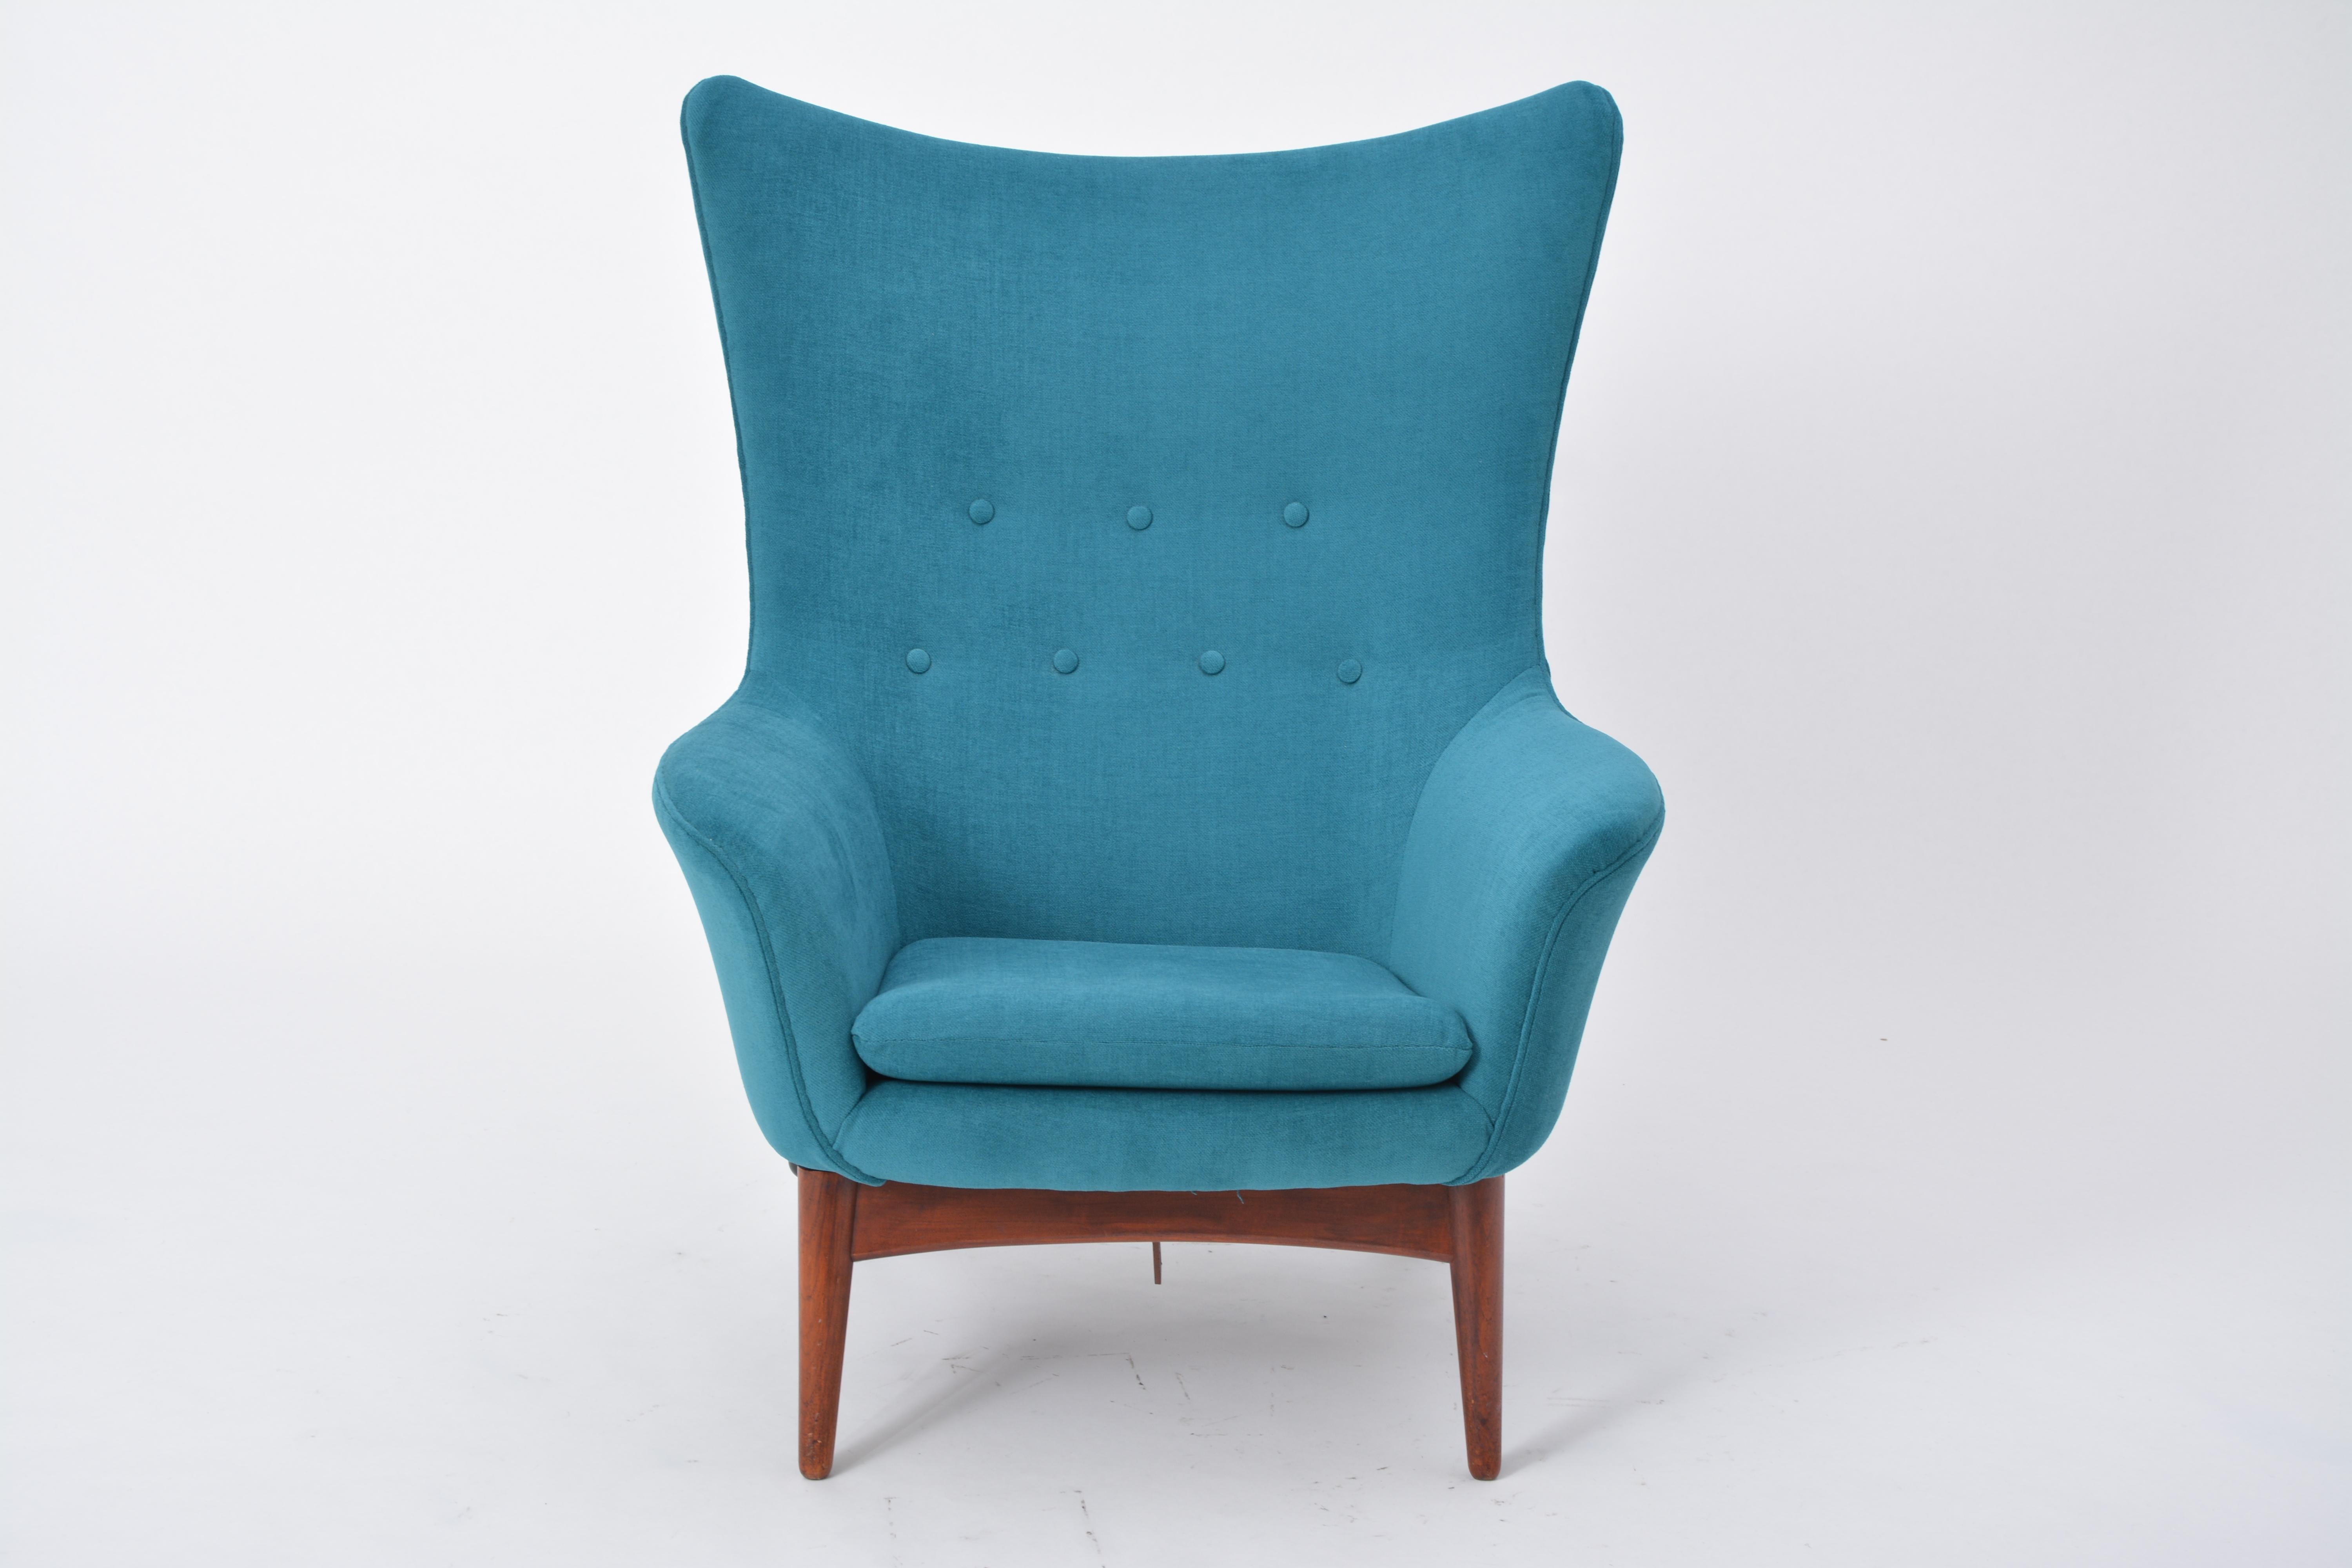 Fauteuil inclinable danois de style moderne du milieu du siècle dernier, conçu par Henry W. Klein et retapé

La chaise a un design arrondi avec un subtil dossier en forme d'aile et dispose d'un mécanisme d'inclinaison réglé avec un bouton sur le